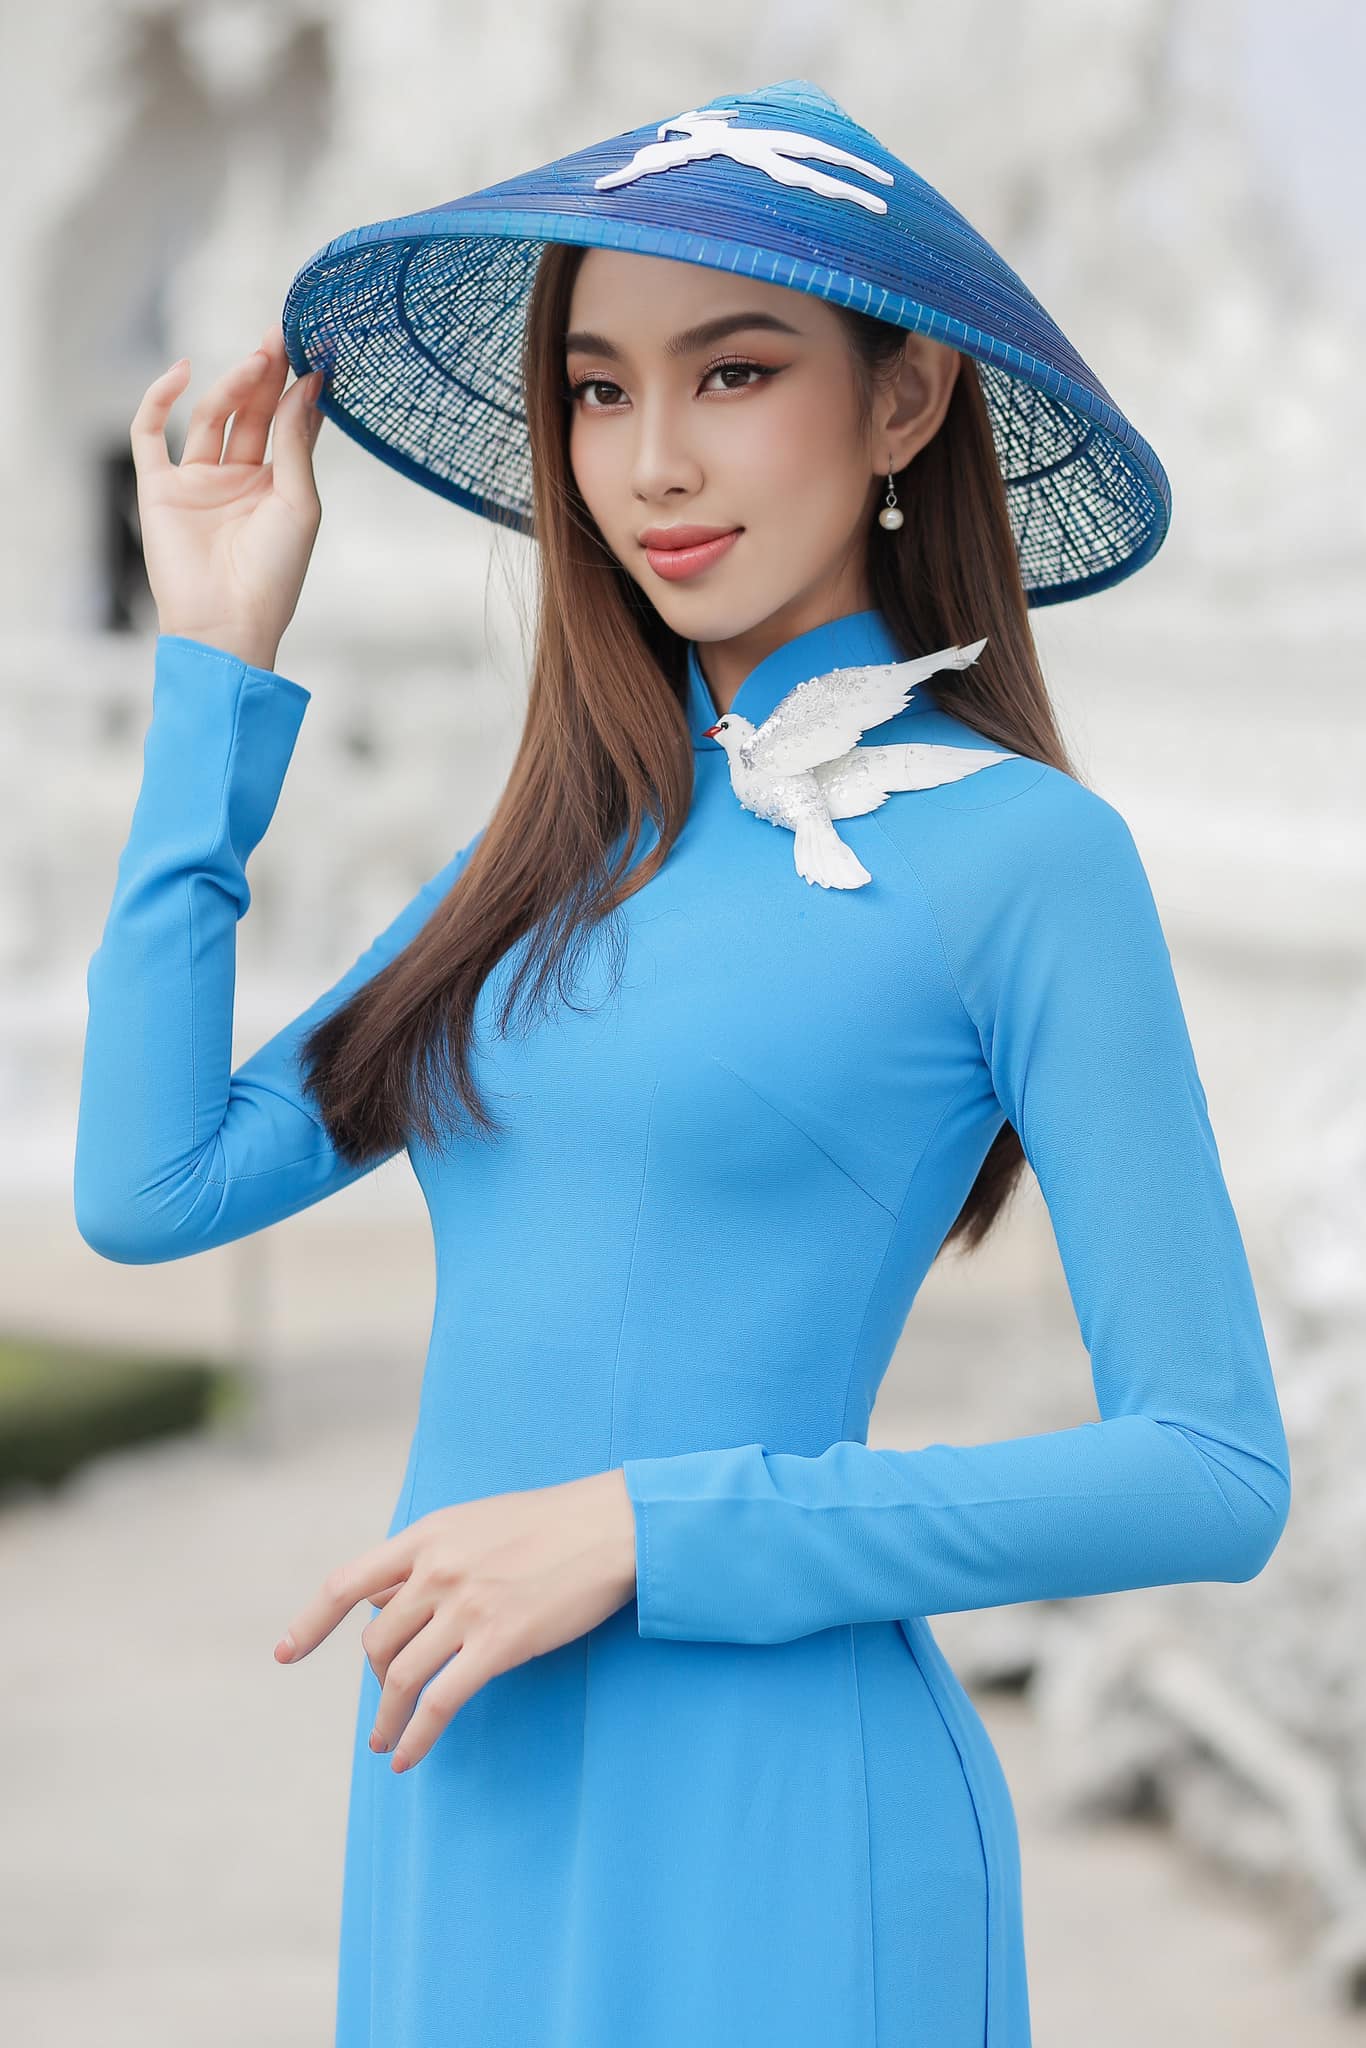 Nguyễn Thúc Thùy Tiên chia sẻ lý do ít mặc Áo dài, chỉ diện đồ truyền thống Thái Lan trong các hoạt động sau đăng quang